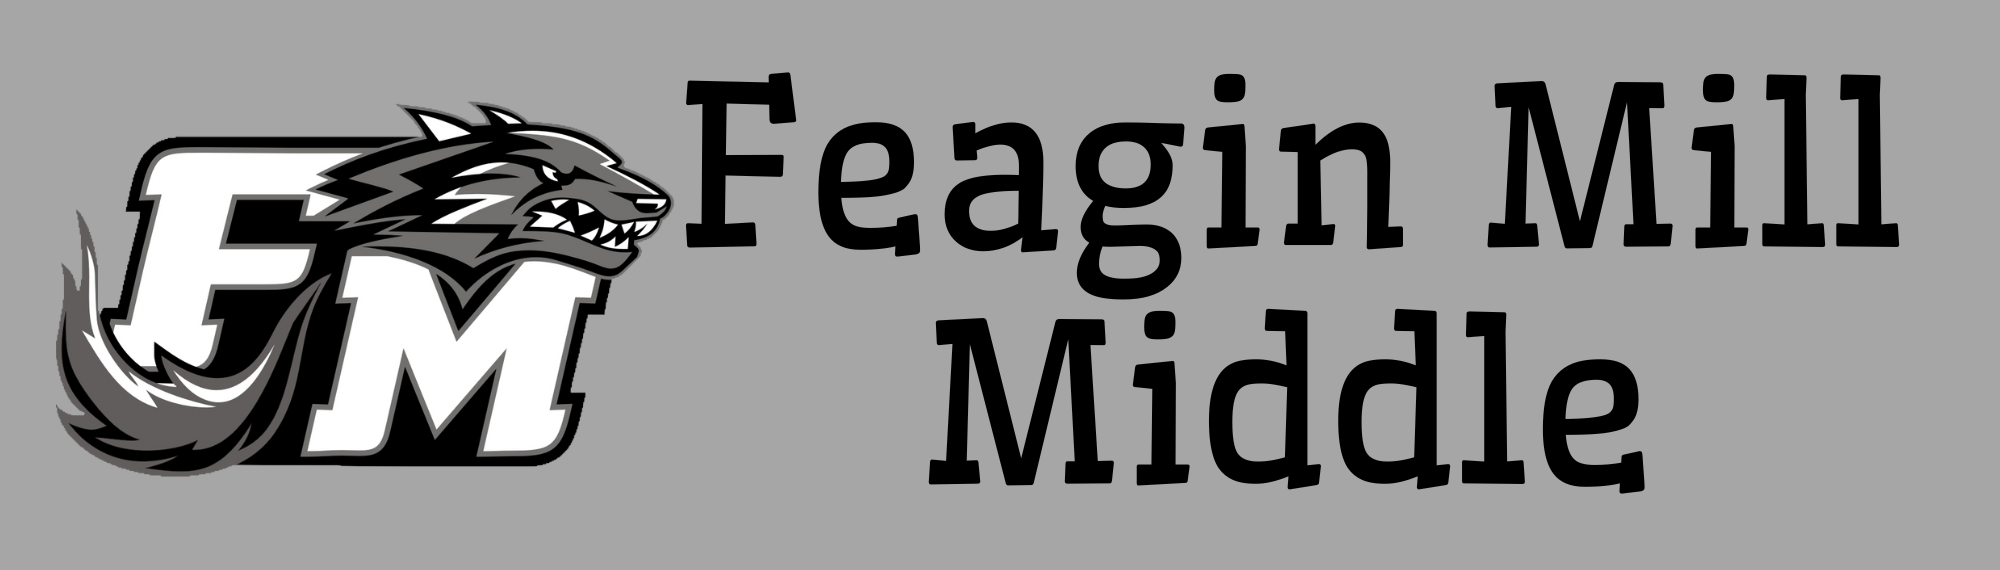 Feagin Mill Middle 